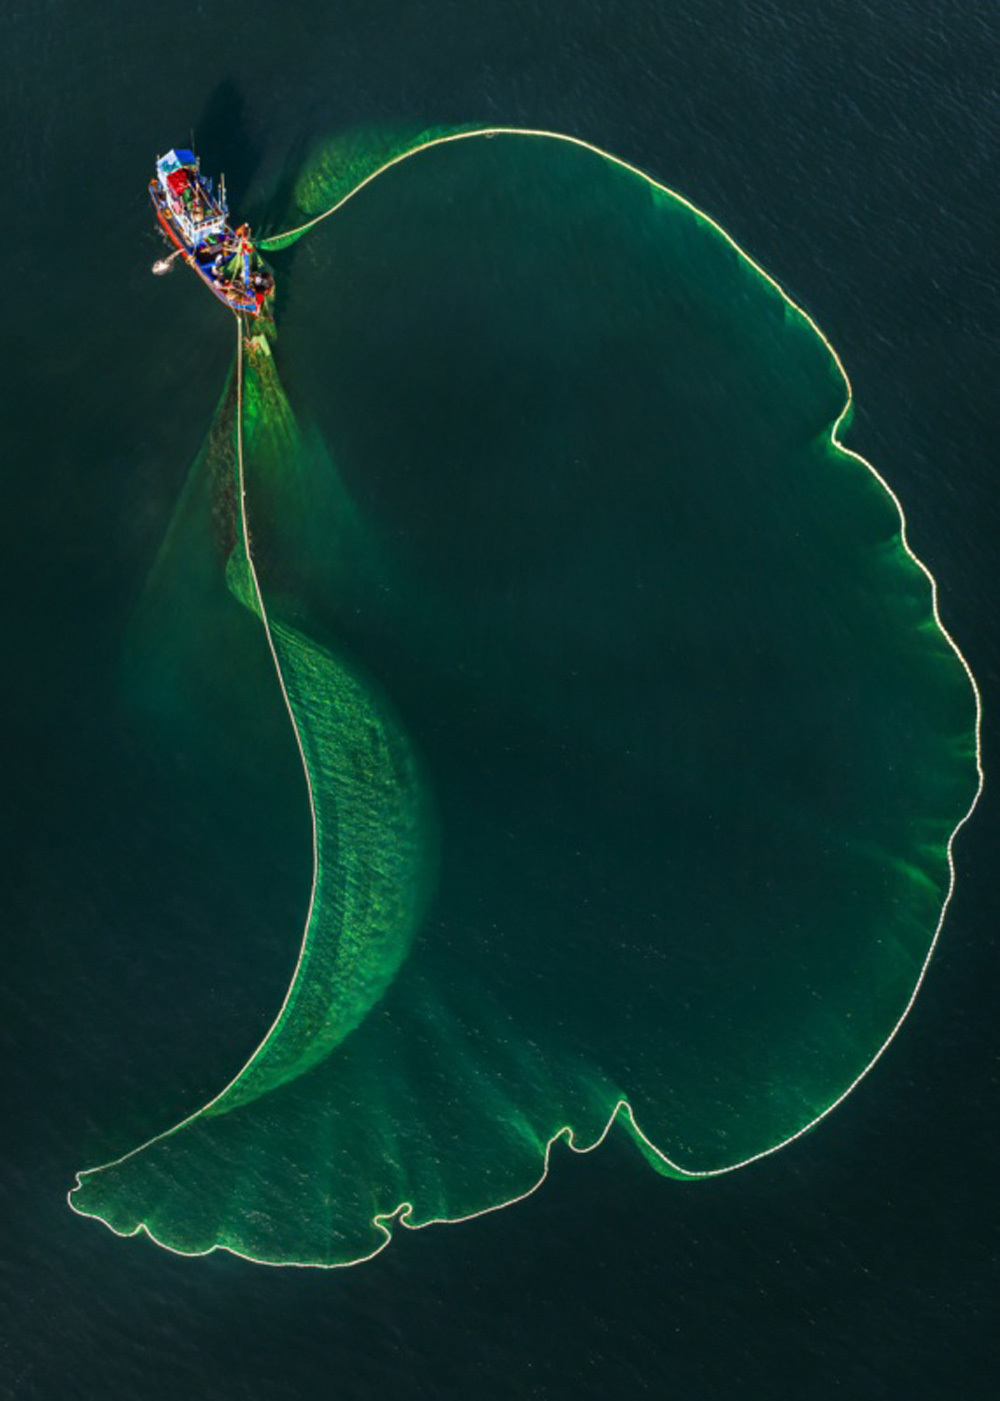  
Tác phẩm mang tên "Dáng hình lưới đánh cá" của nhiếp ảnh gia Khanh Phan cũng rất ấn tượng